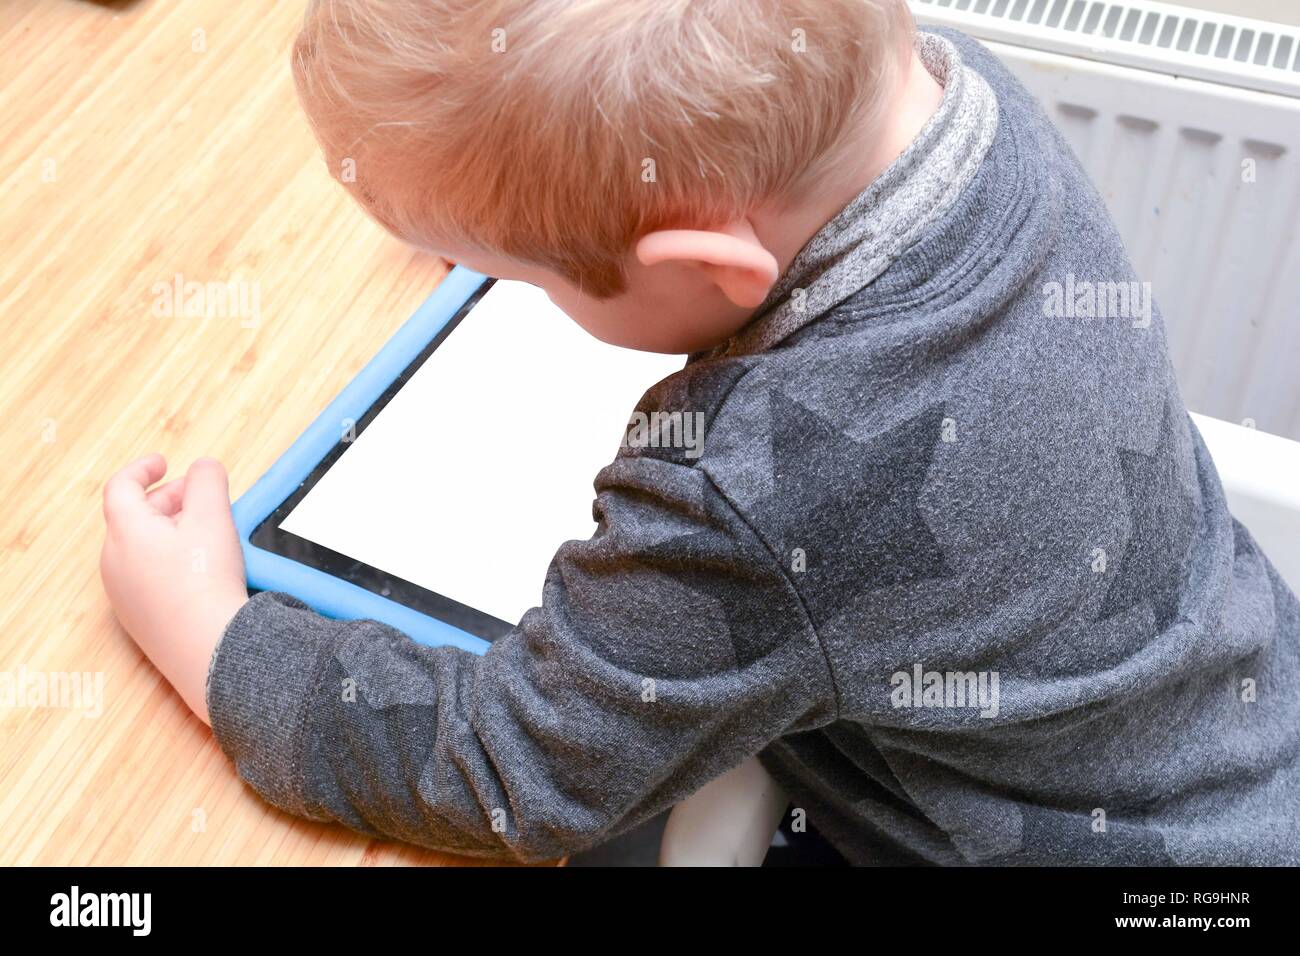 Kind mit einem Tablet Device zu lernen und Spiele spielen, Modell wird Jungen Stockfoto